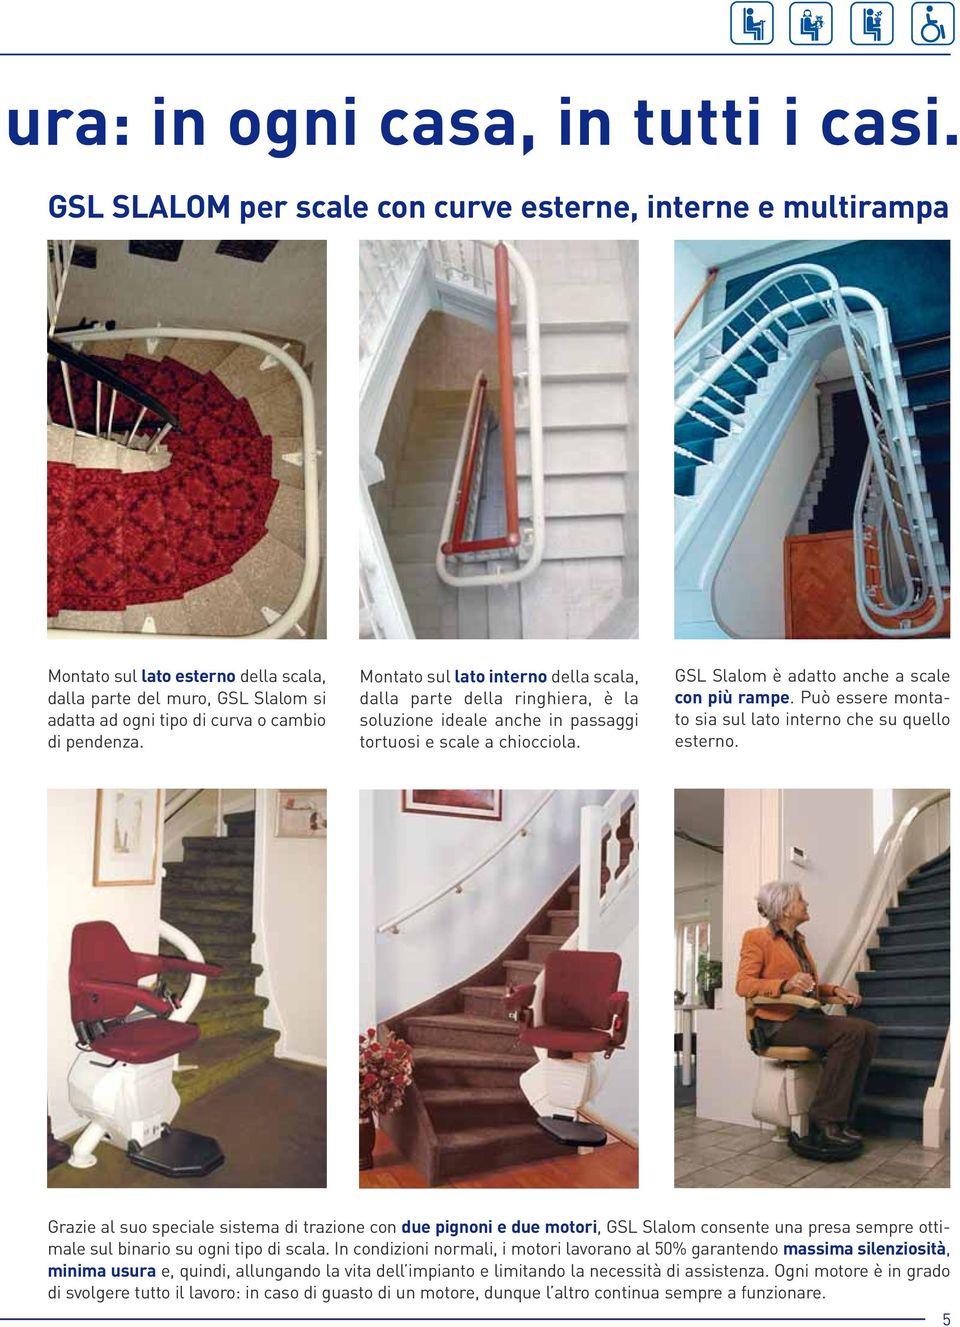 Montato sul lato interno della scala, dalla parte della ringhiera, è la soluzione ideale anche in passaggi tortuosi e scale a chiocciola. GSL Slalom è adatto anche a scale con più rampe.